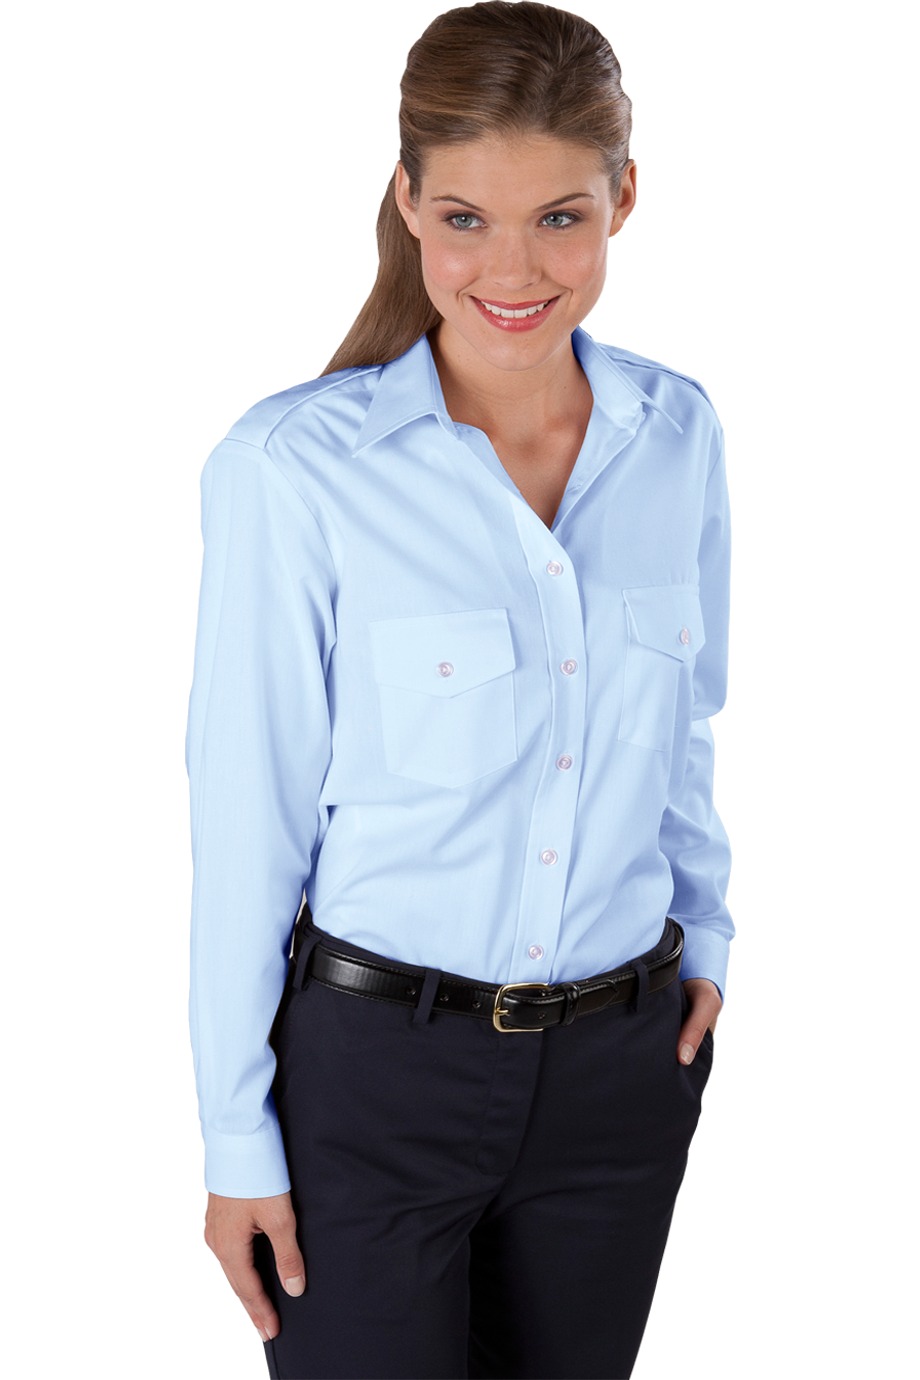 Edwards Garment 5262 - Women's Long Sleeve Navigator Shirt